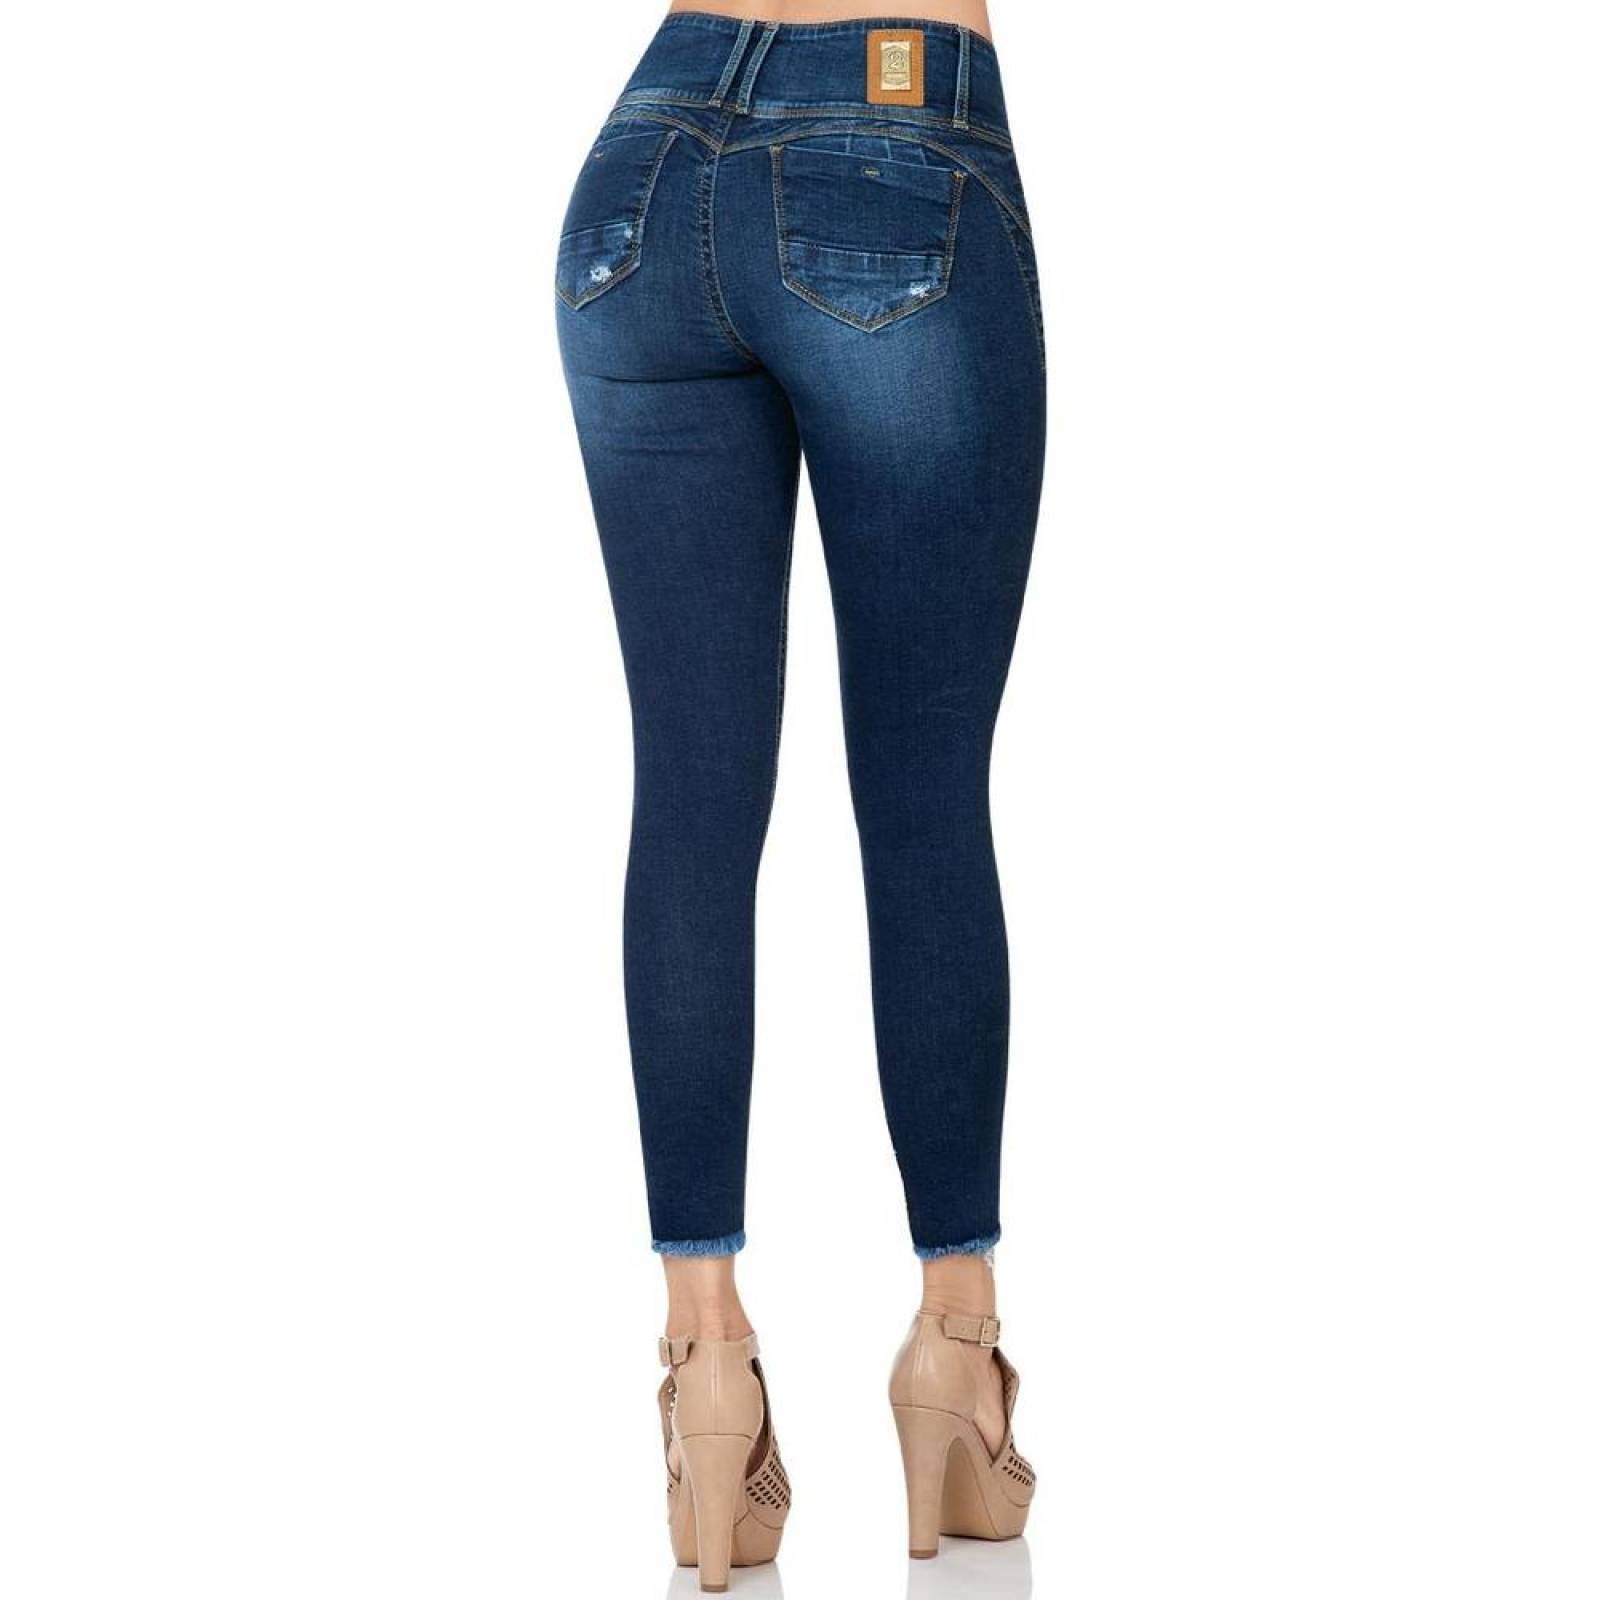 Jeans Moda Mujer Salvaje Tentación Indigo 71803315 Mezclilla Stretch 